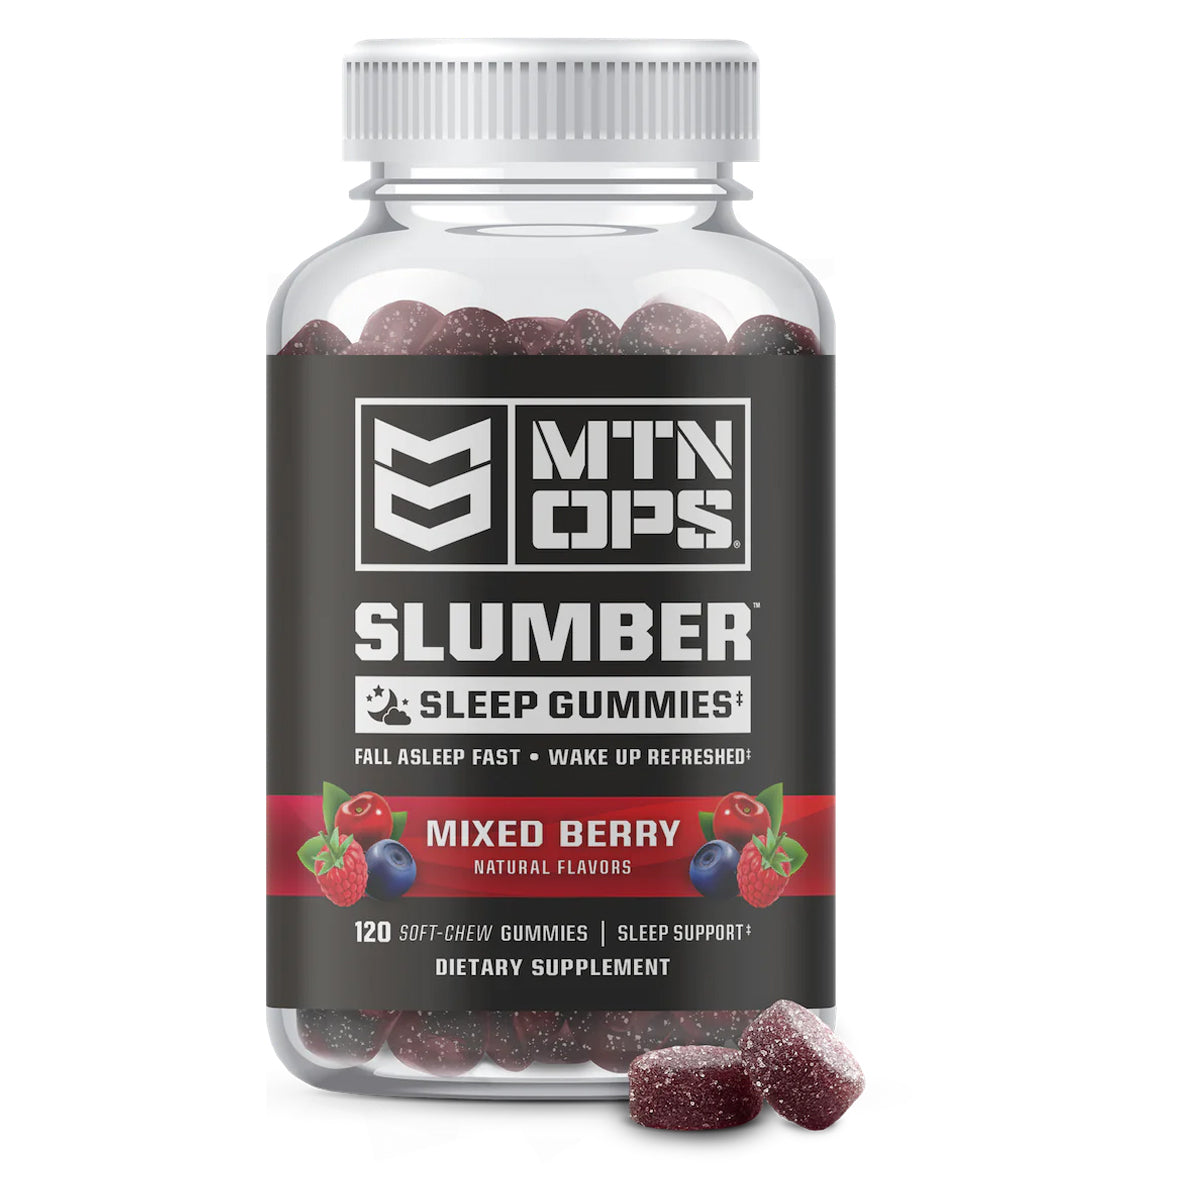 MTN OPS Slumber Gummies